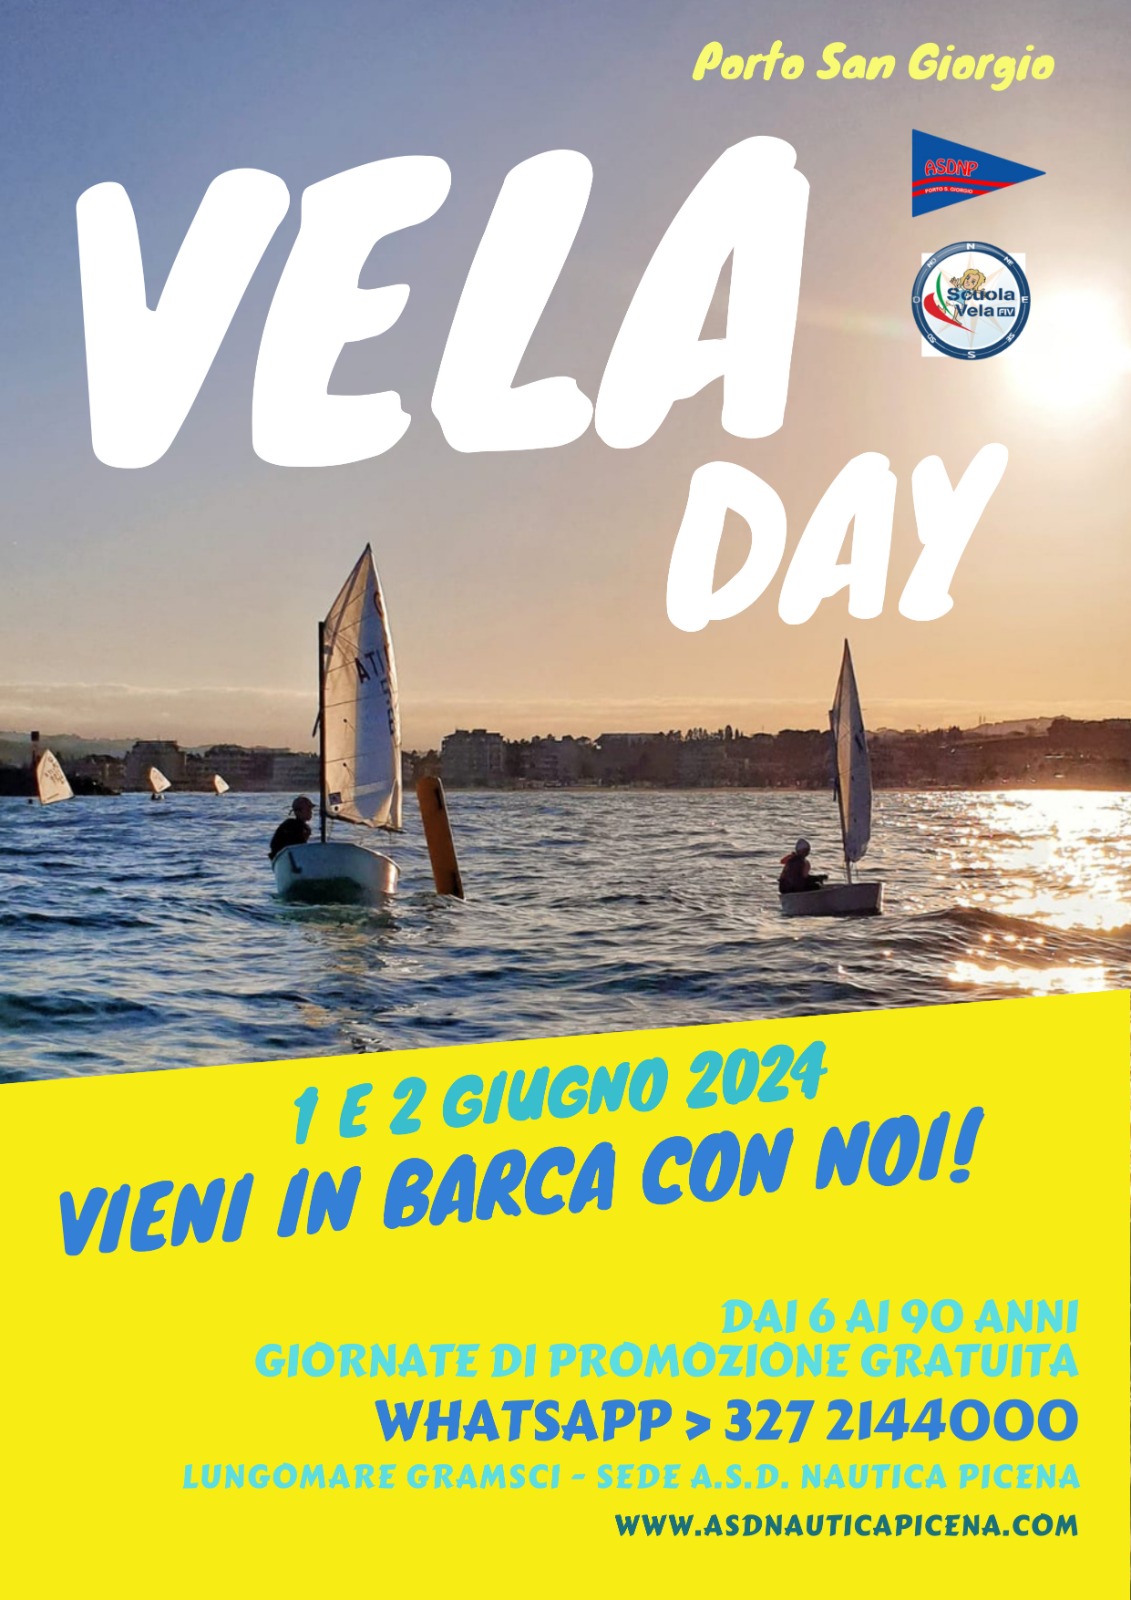 Vela Day